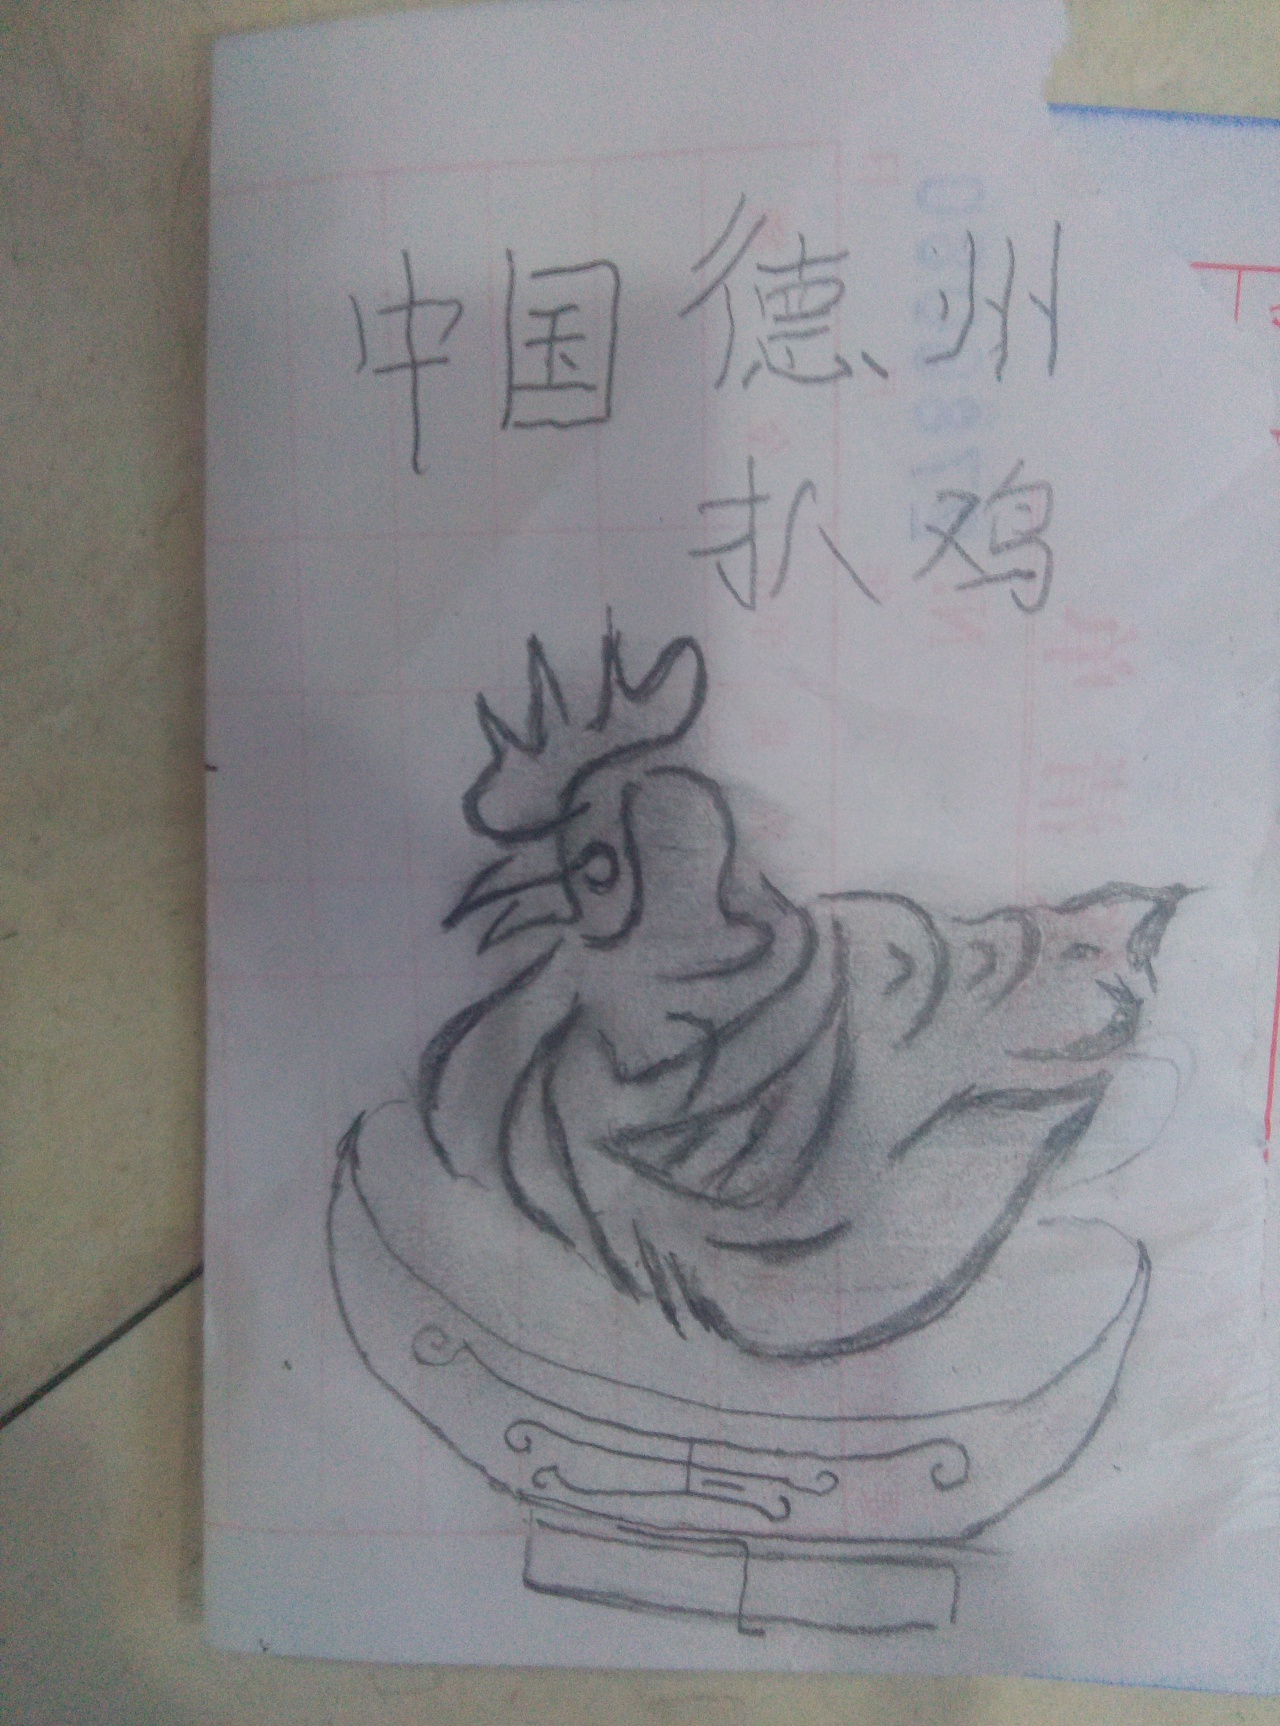 字画组合"中国德州扒鸡".